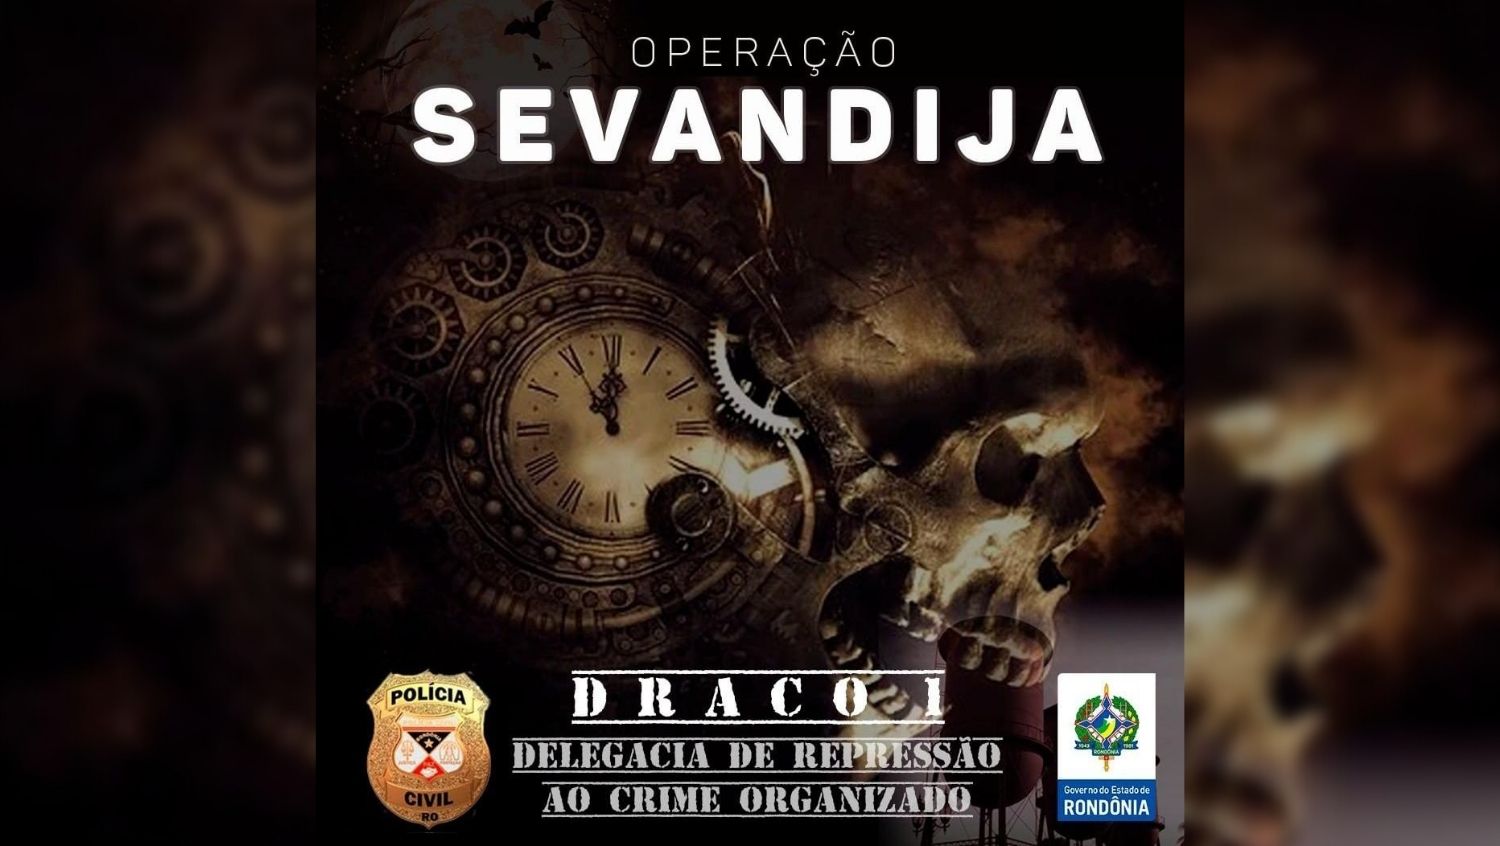 ORGANIZAÇÃO CRIMINOSA: Polícia Civil emite nota sobre Operação Sevandija deflagrada pela Draco